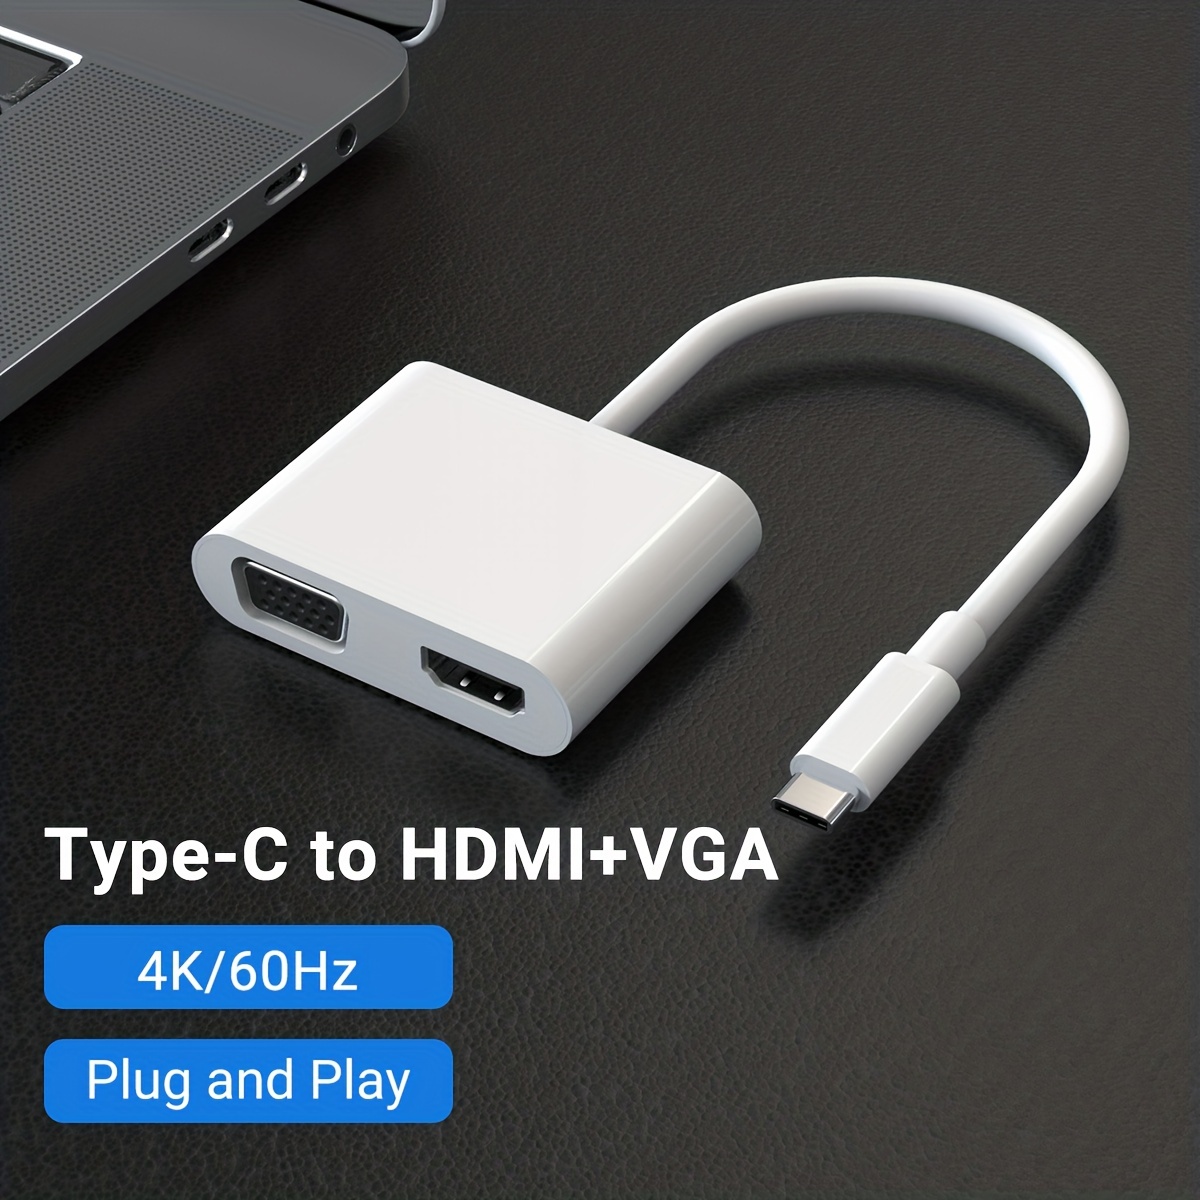 Adaptador USB a HDMI, USB 3.0 a HDMI 1080P convertidor de audio de video  con un cable HDMI de 6 pies para conectar PC, portátil a monitor,  compatible